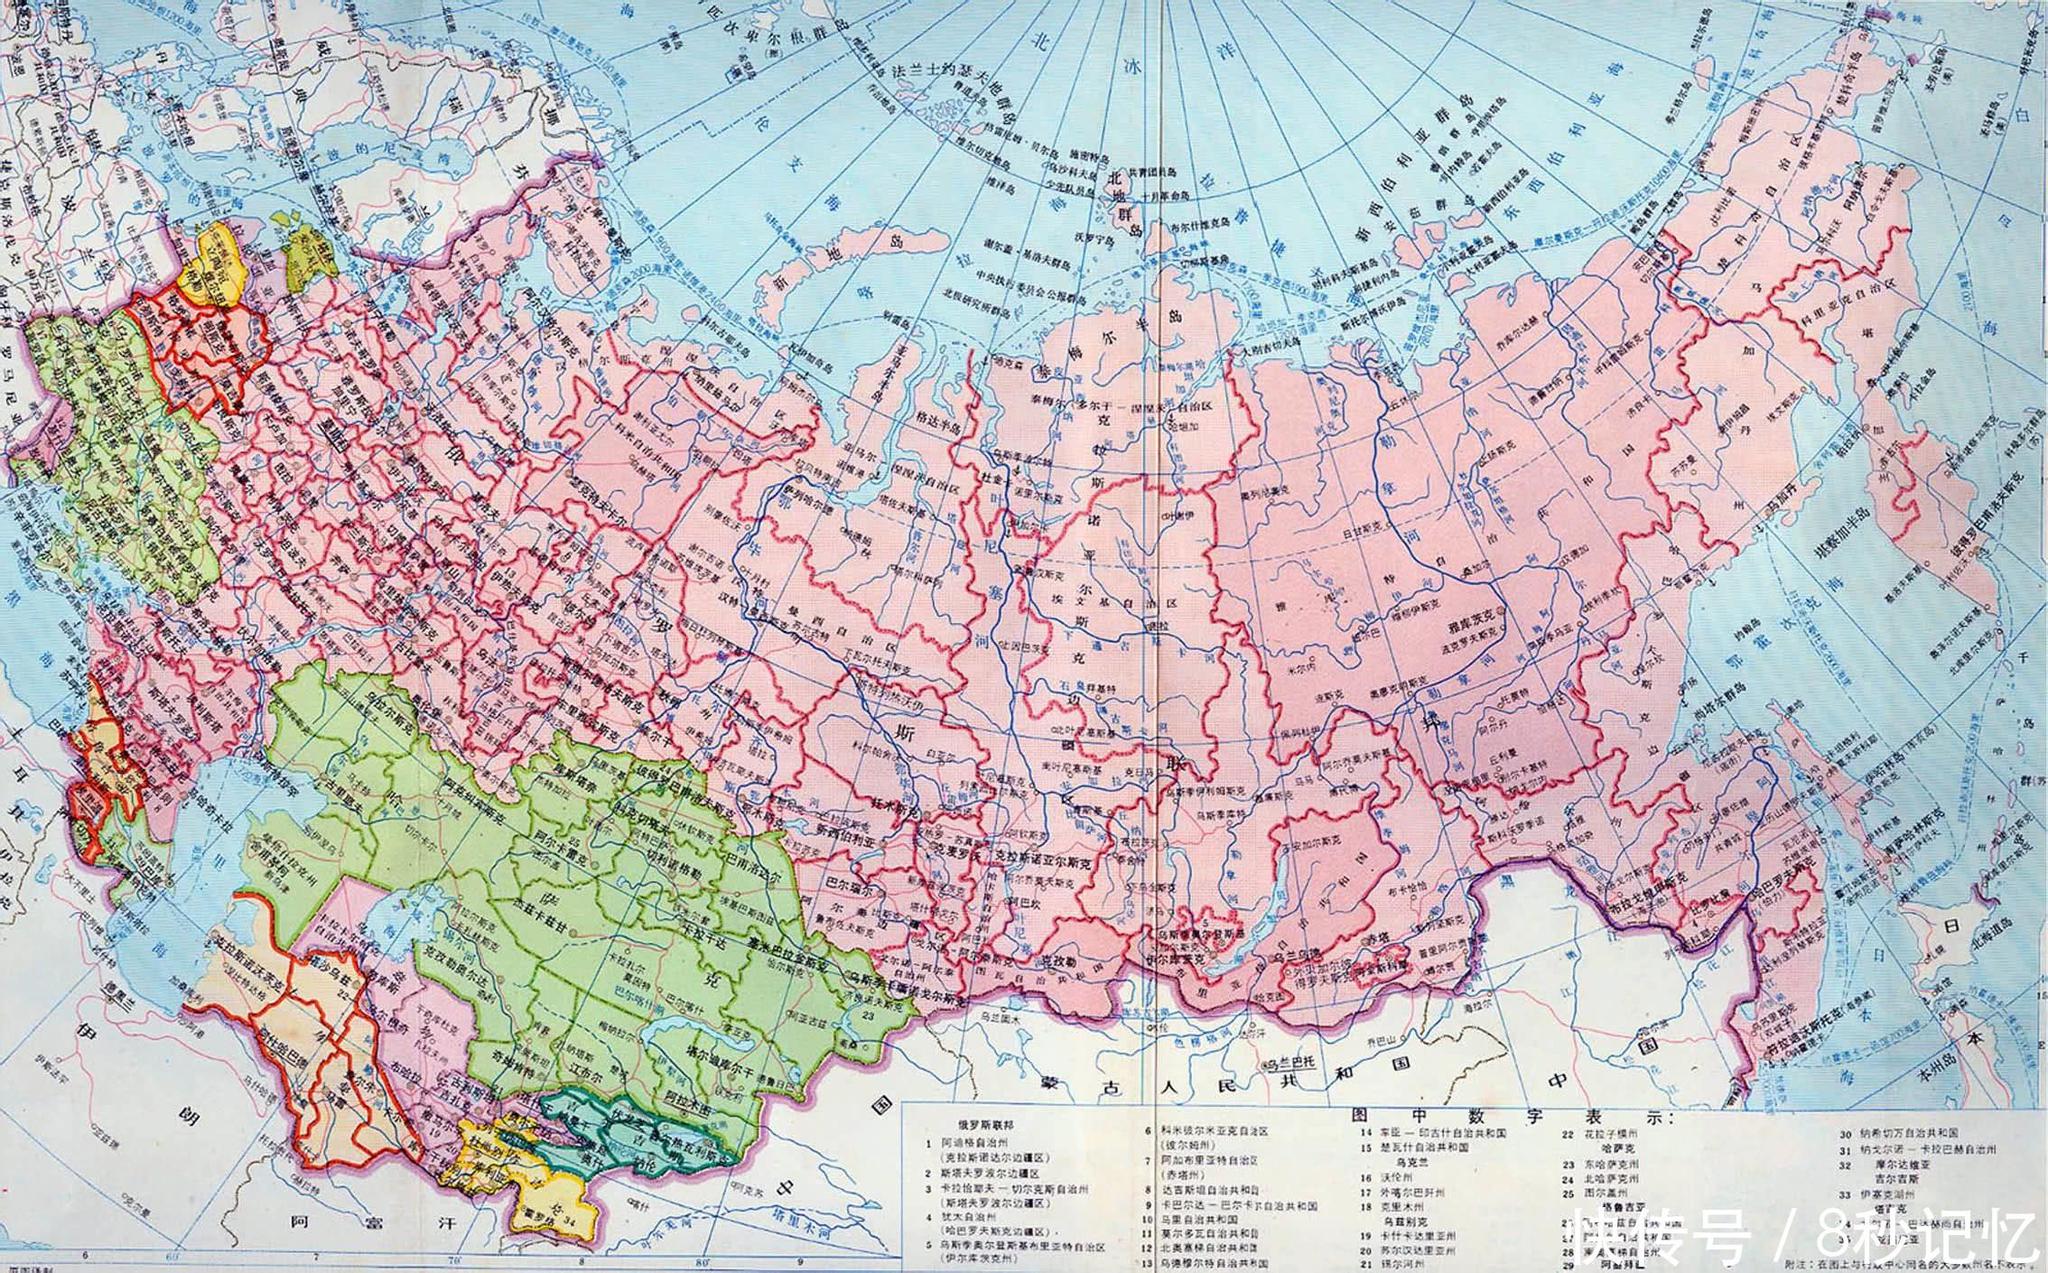 西伯利亚暗色岩 地图图片